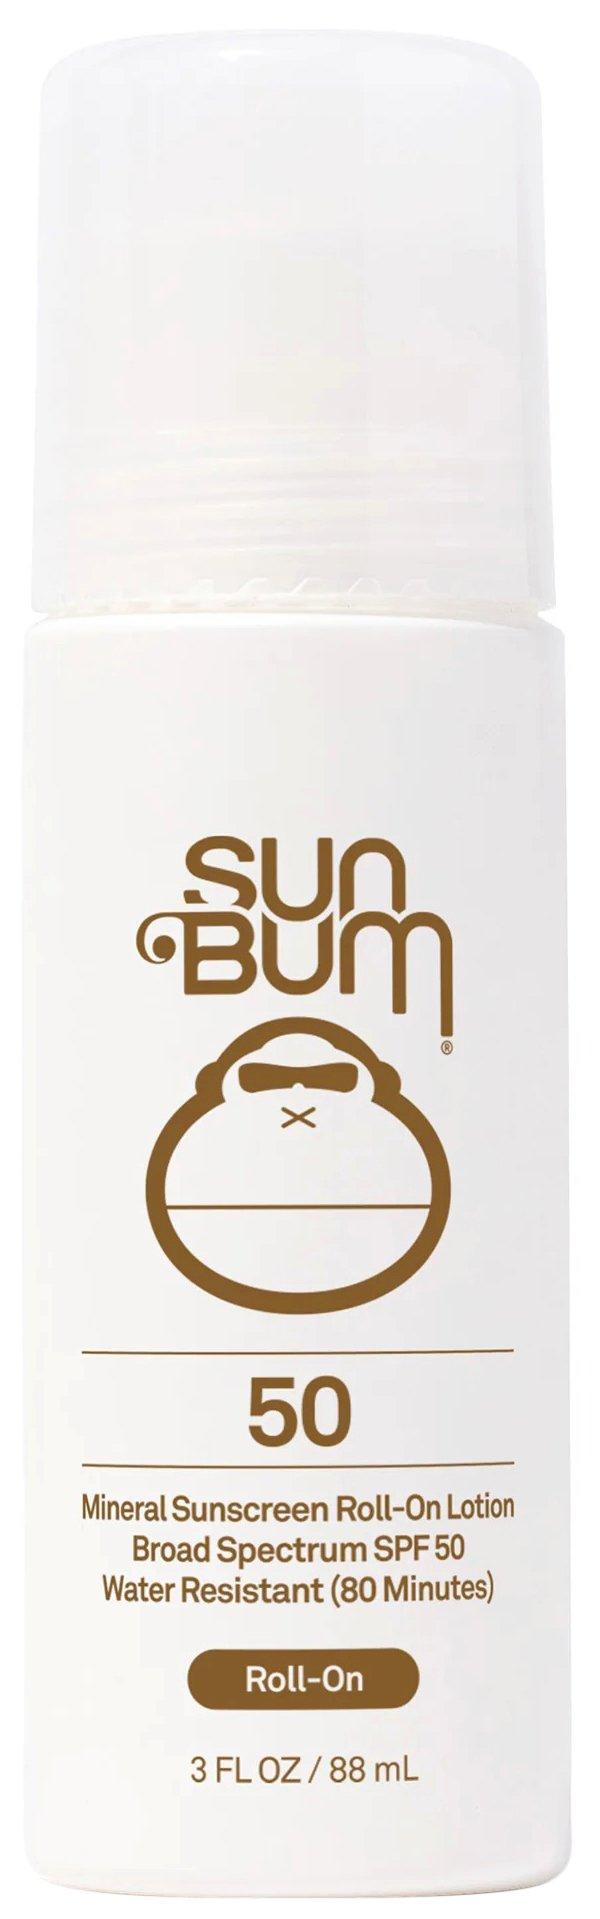 Sun Bum SPF 50 Zinc Oxide Mineral Sunscreen Roll-On Lotion